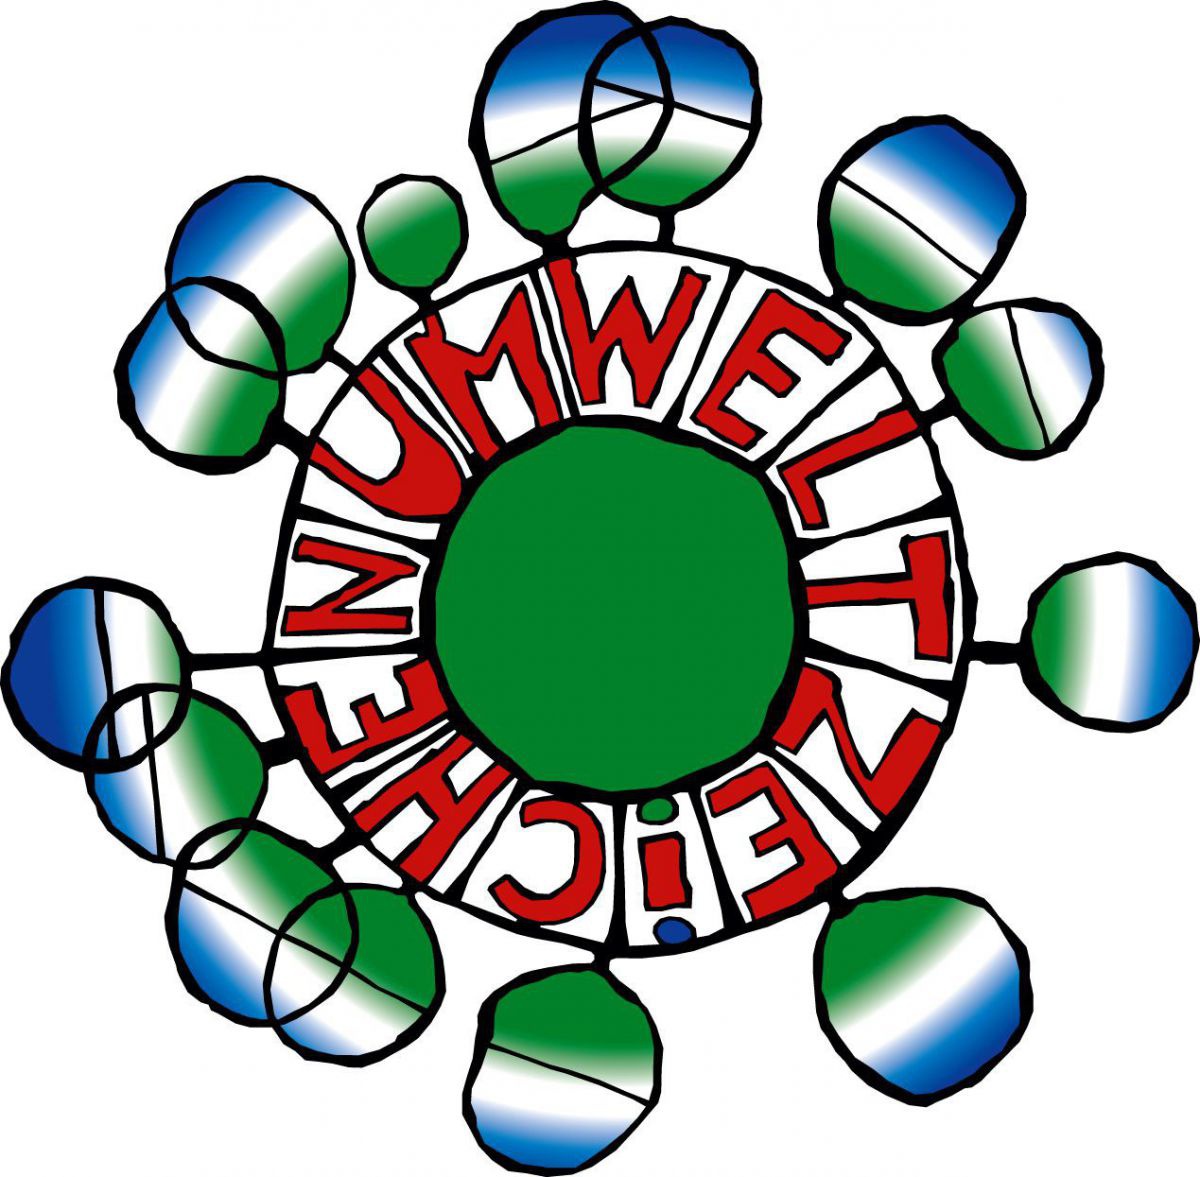 Das Umweltzeichen: ein grüner Kreis in der Mitte, rundherum in roter Schrift angeordnet das Wort 